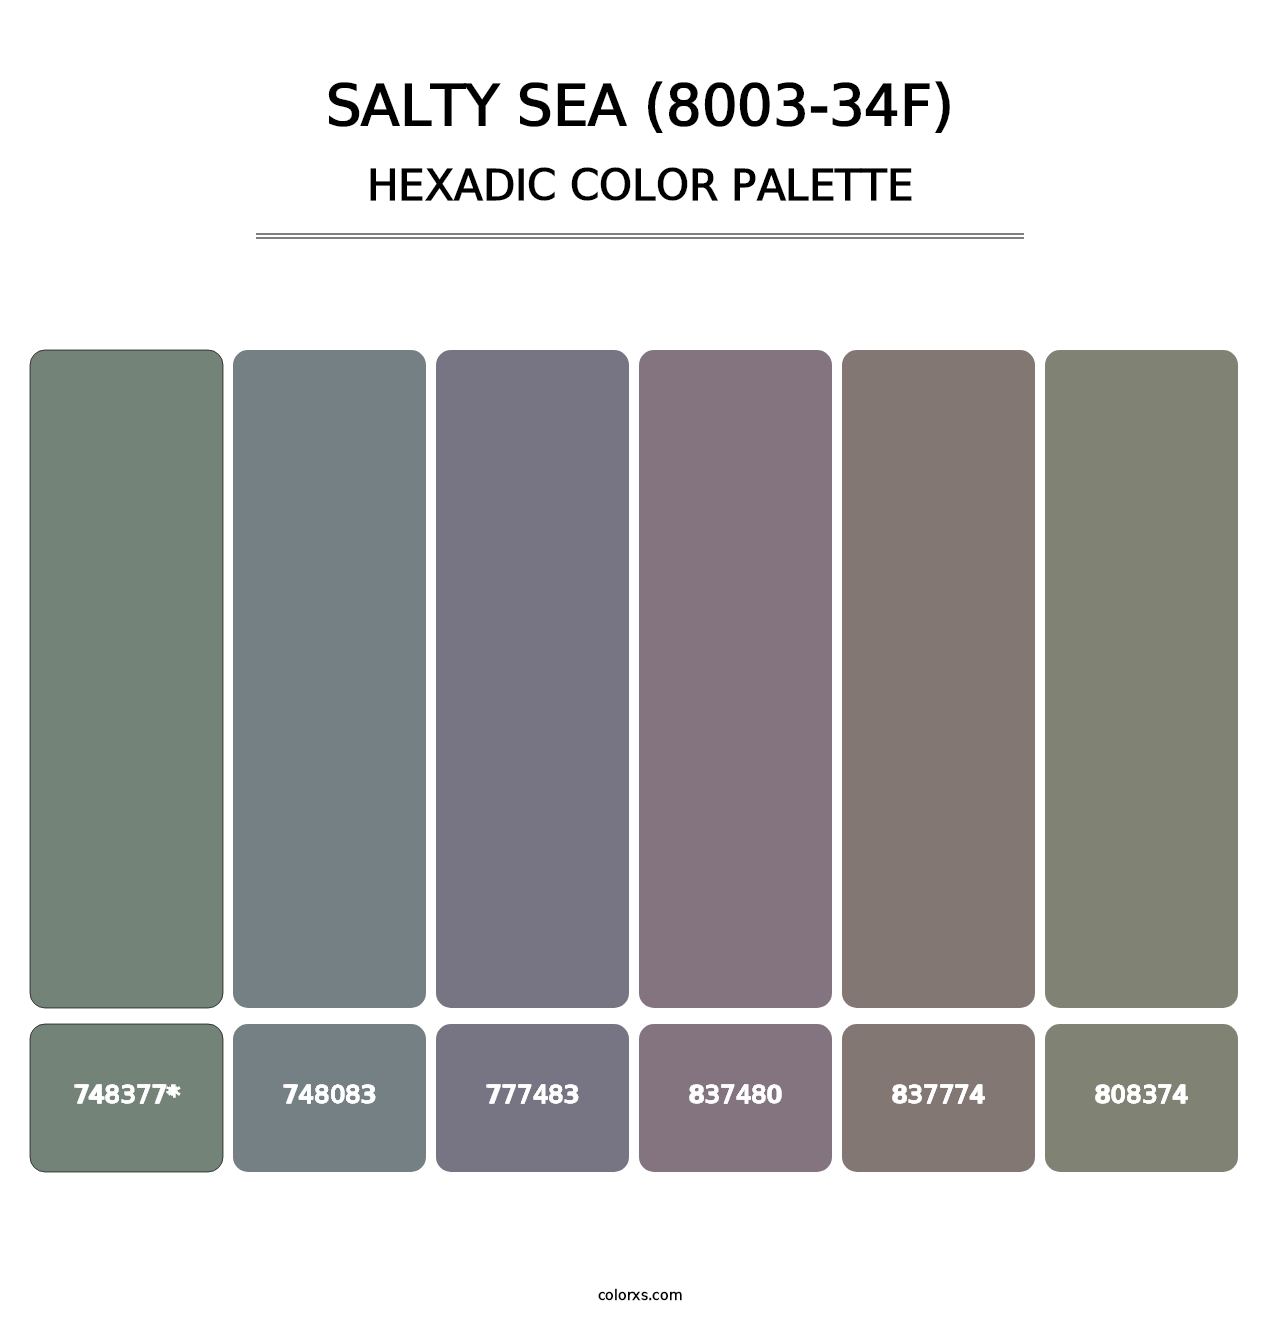 Salty Sea (8003-34F) - Hexadic Color Palette